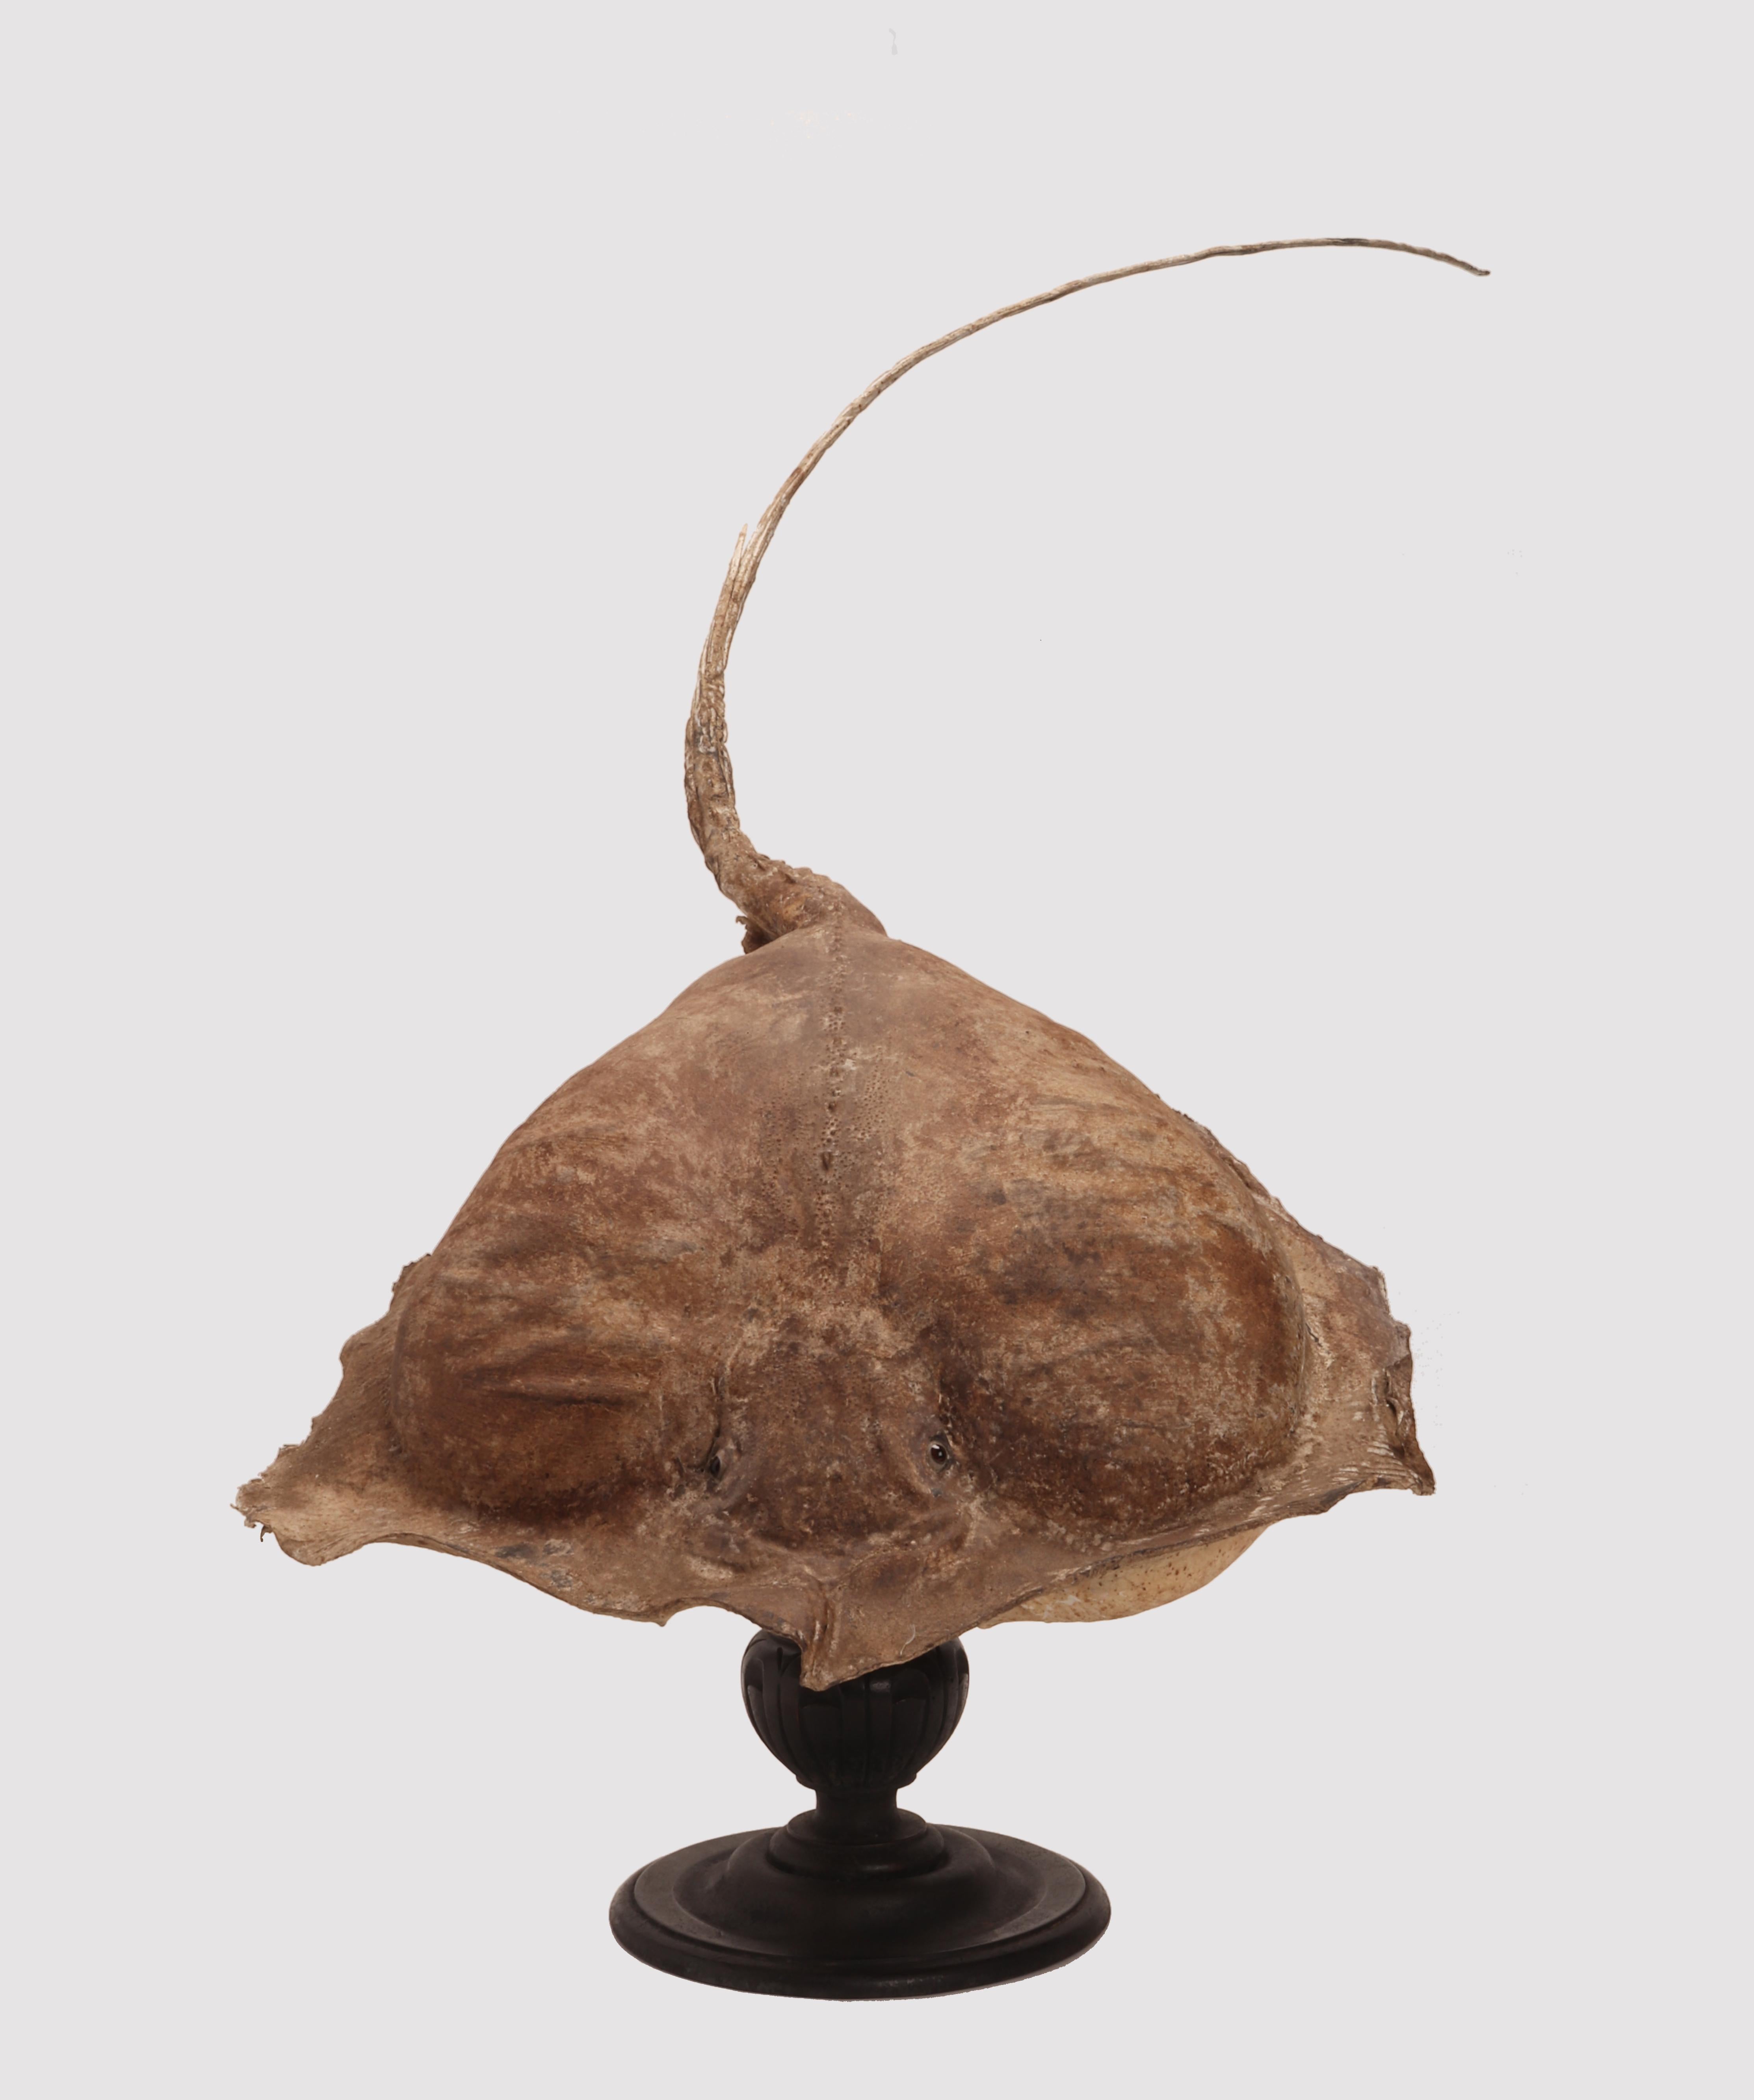 Präpariertes marines Natur-Wunderkammer-Exemplar, einbalsamierter Stechrochen (Raja Clavata). Das Exemplar ist ausgestopft und auf einem Sockel montiert, der sich um 360 Grad um seine eigene Achse dreht und mit einem zweiflügeligen Messingscharnier